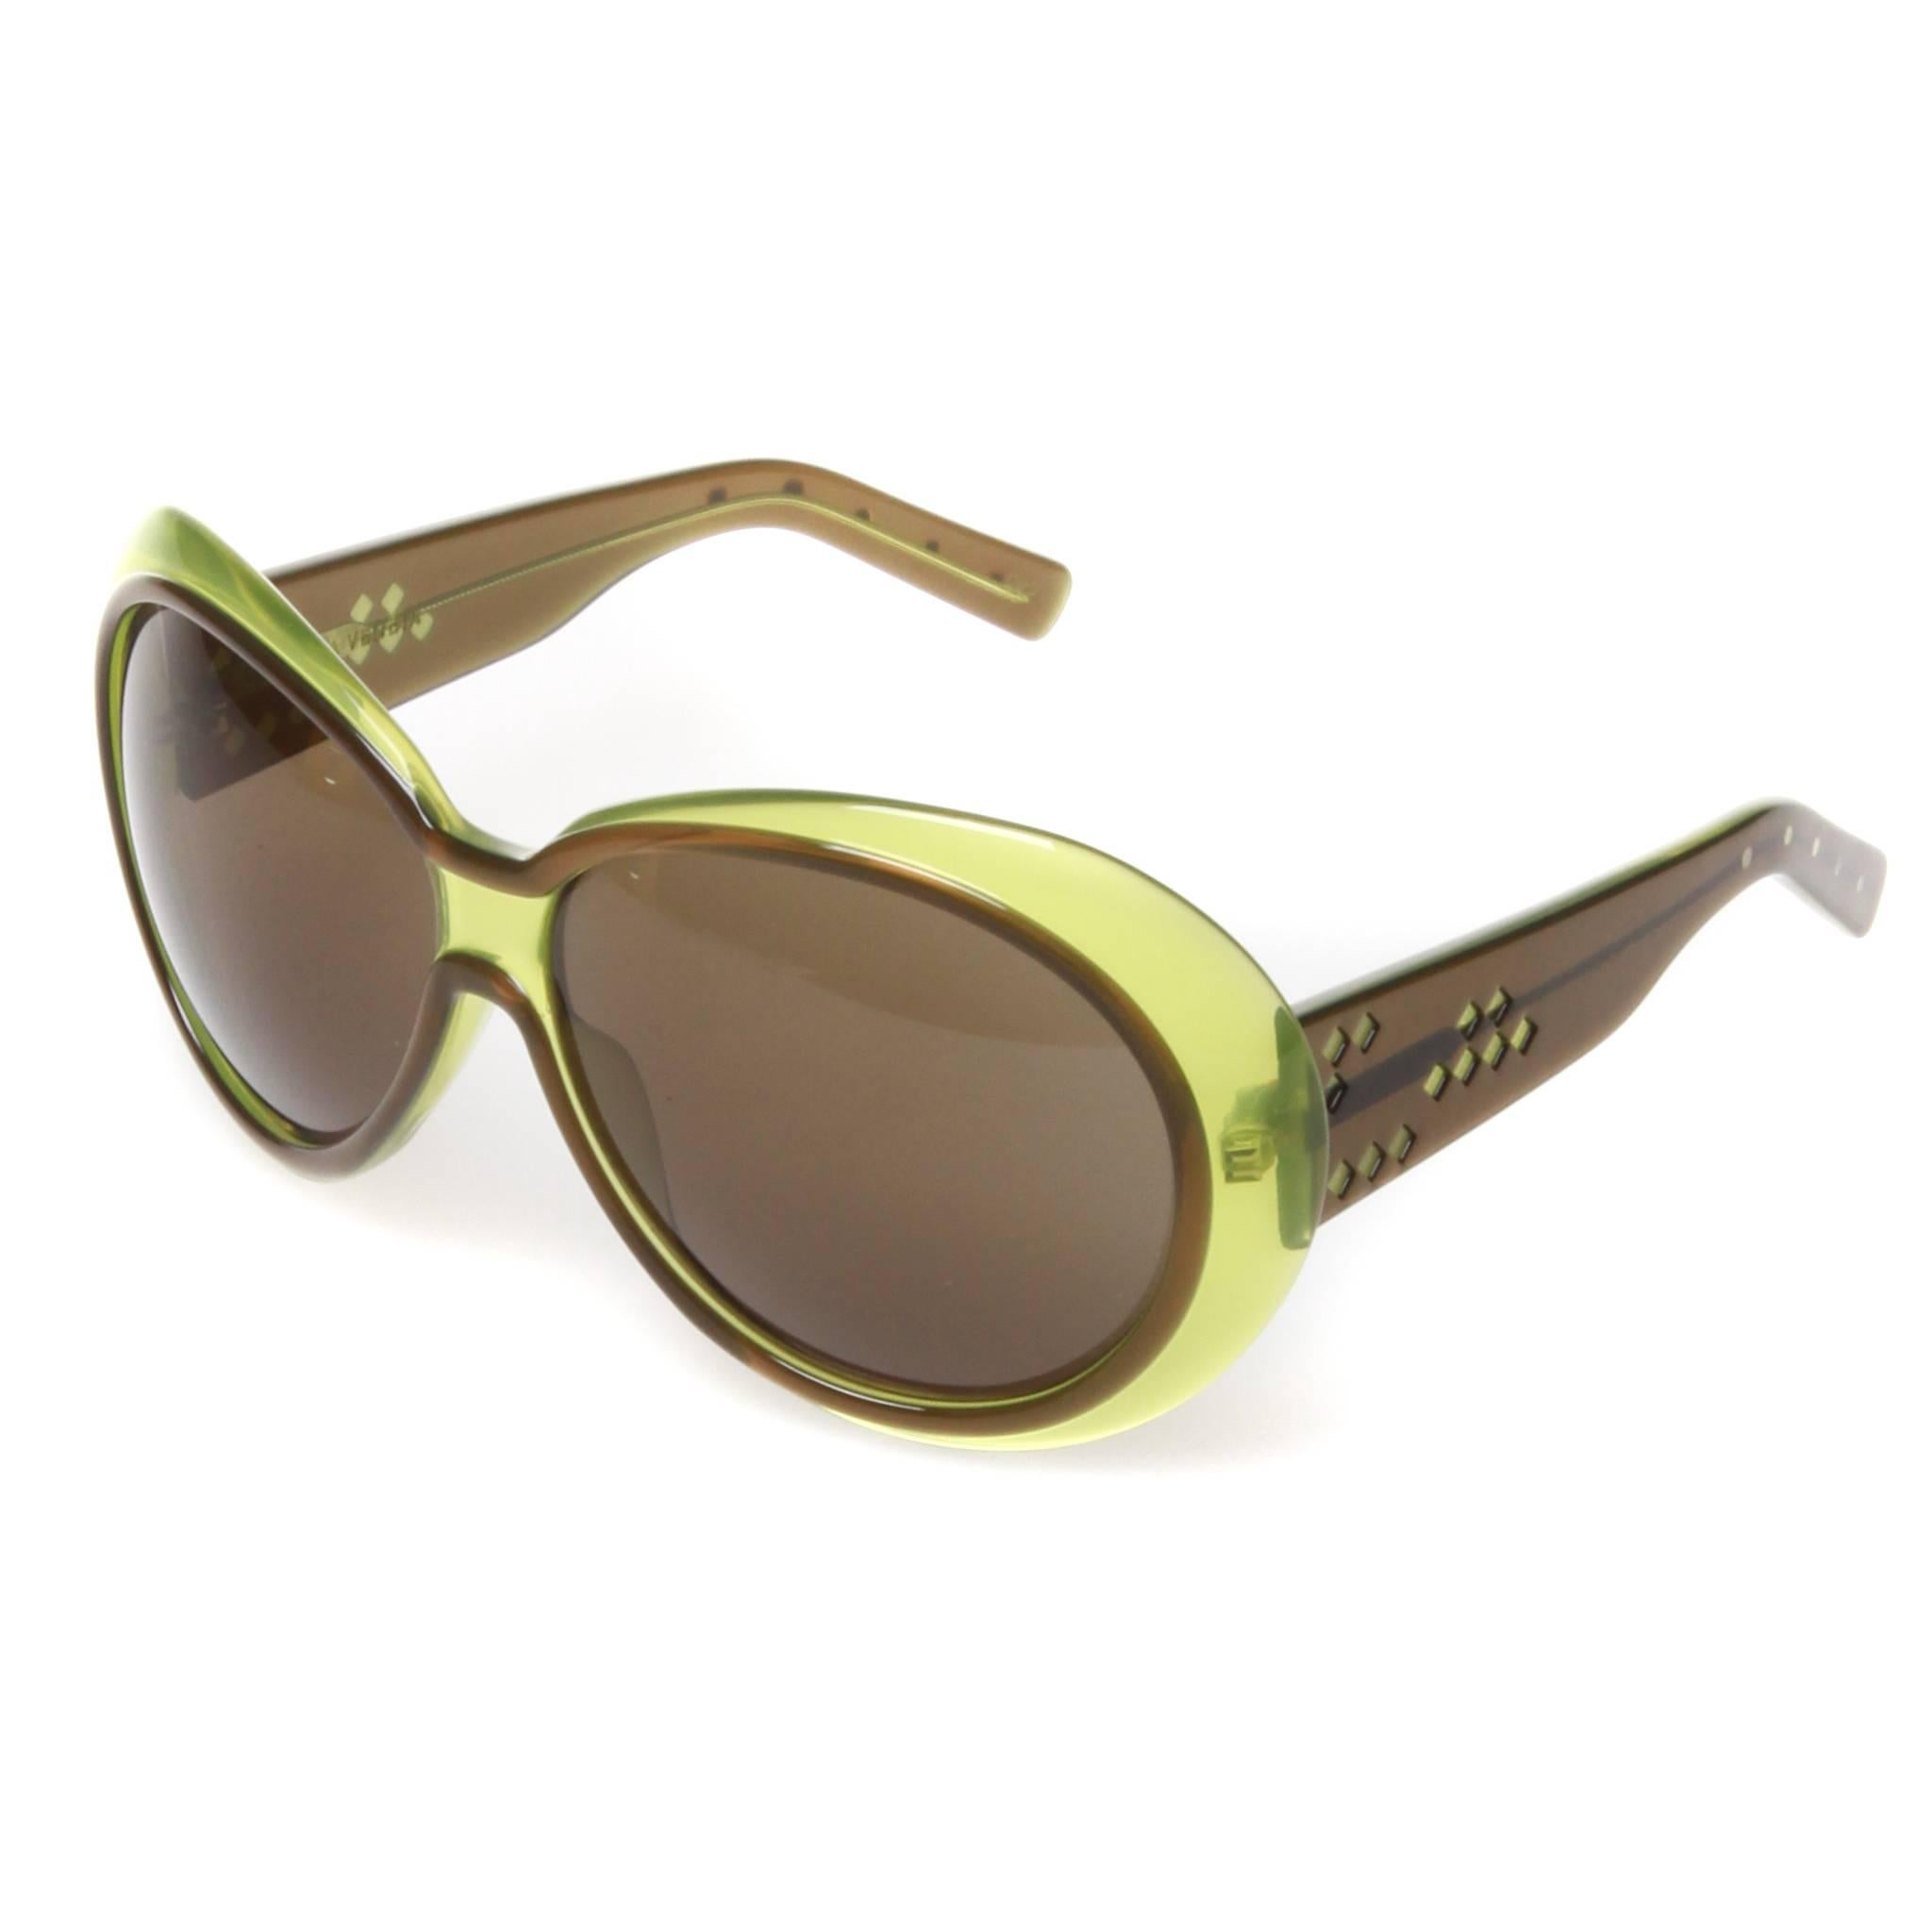 Brown Bottega Veneta sunglasses